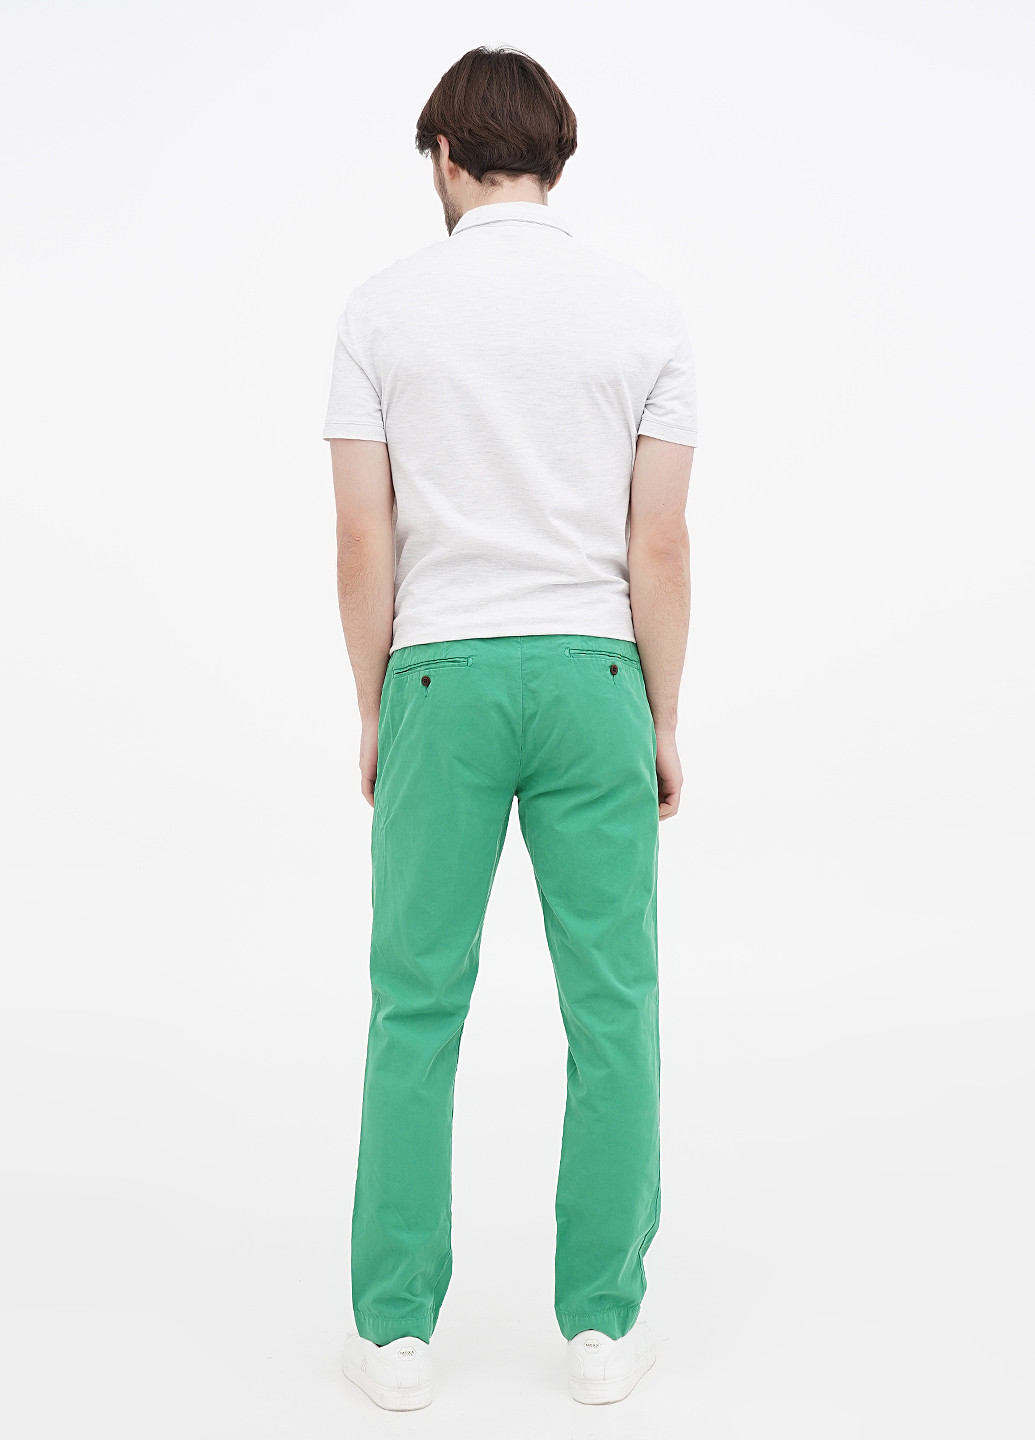 Зеленые кэжуал демисезонные чиносы, прямые брюки Ralph Lauren